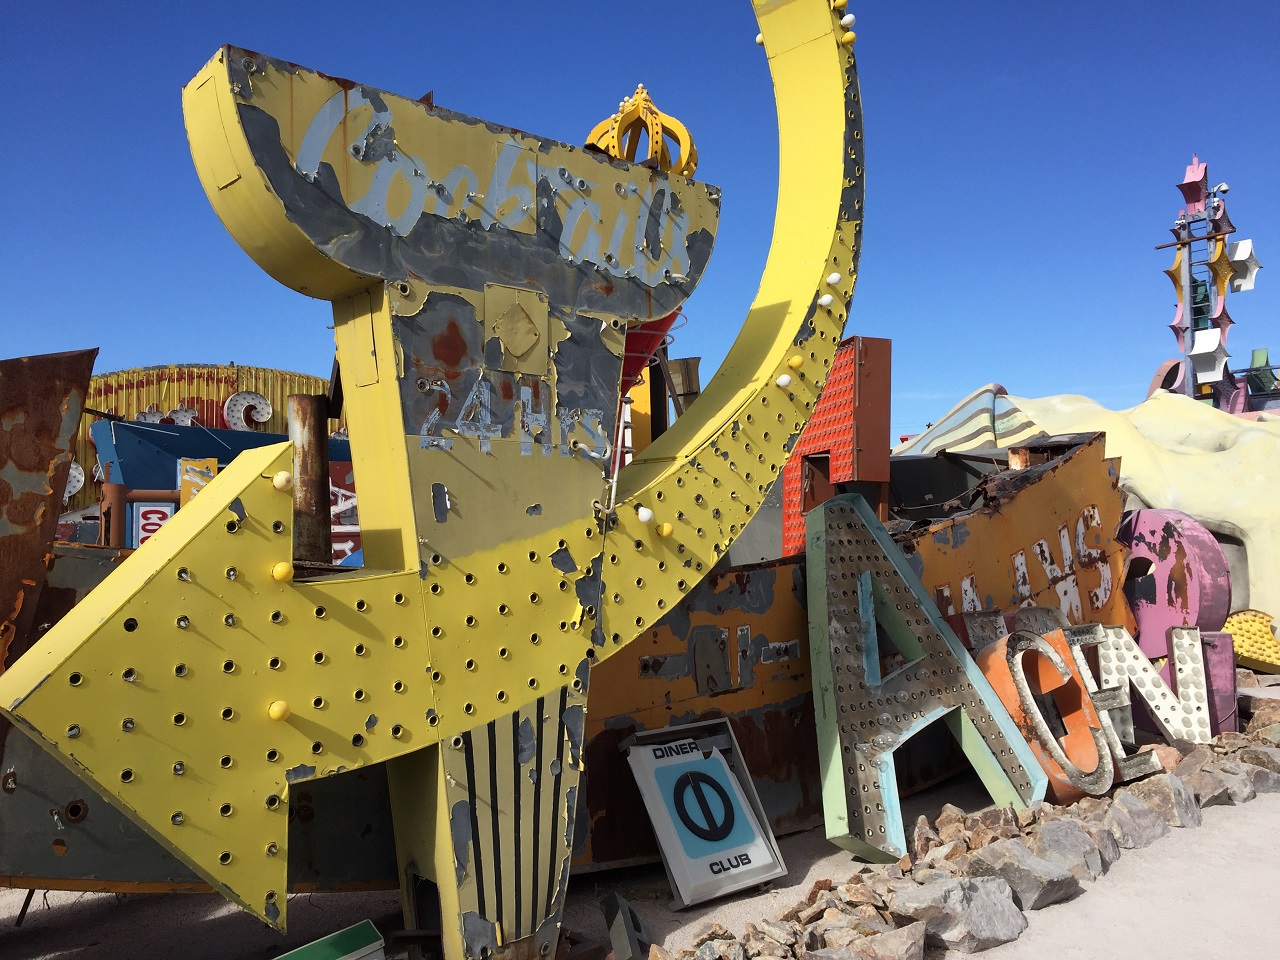 Las Vegas: Fascinating Neon Boneyard